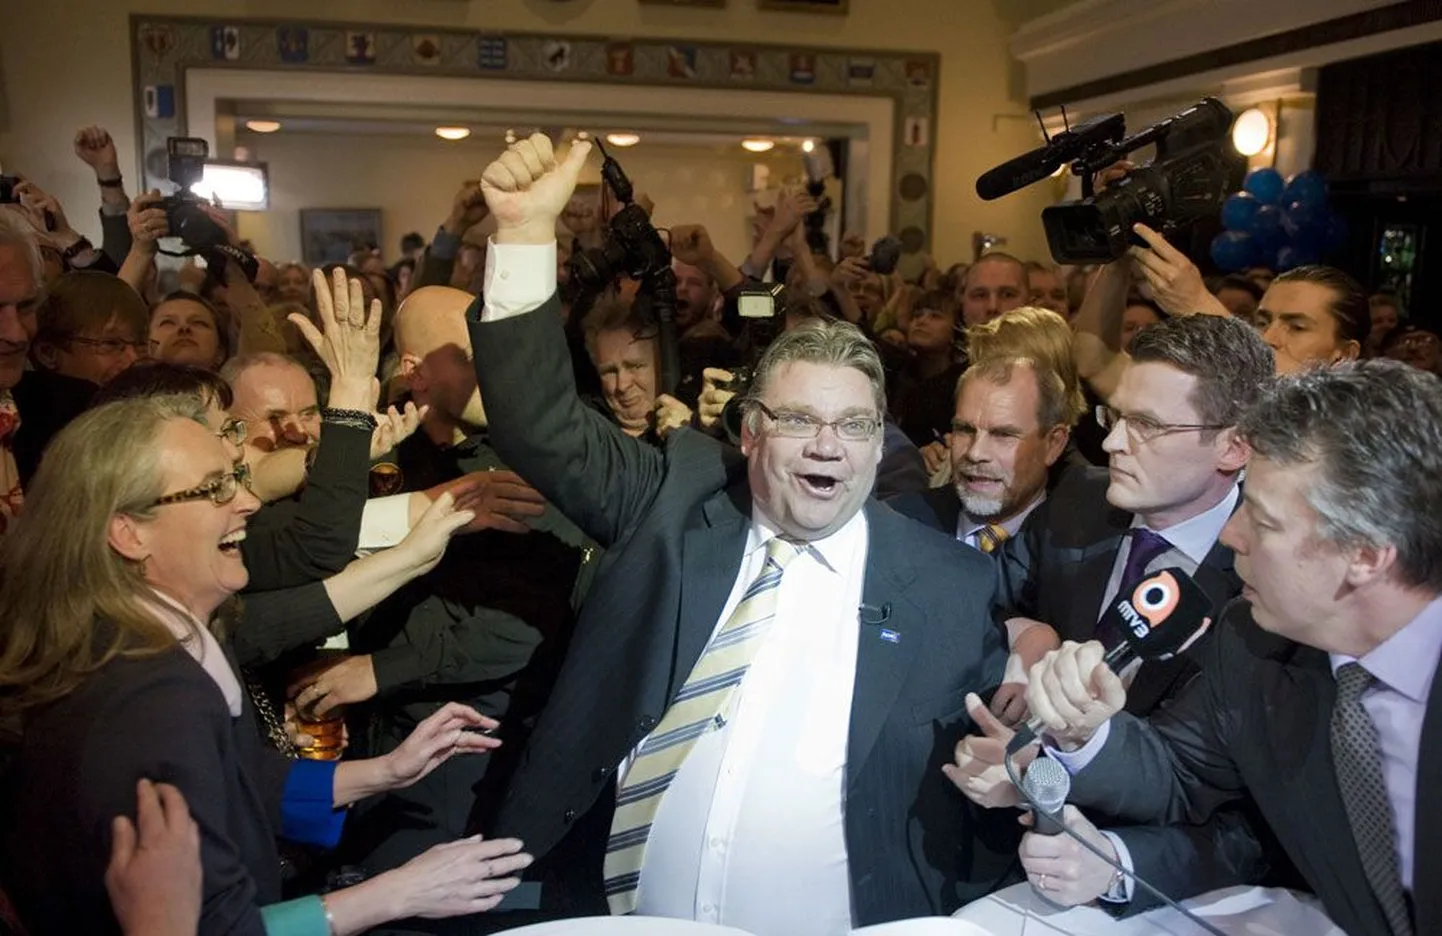 Soome poliitika tardus eelmisel kevadel, nuputades, mida Põlissoomlaste maalihkelaadse võiduga koalitsiooniläbirääkimistel ette võtta. Pildil naudib Timo Soini oma senise poliitikuelu tipphetke.